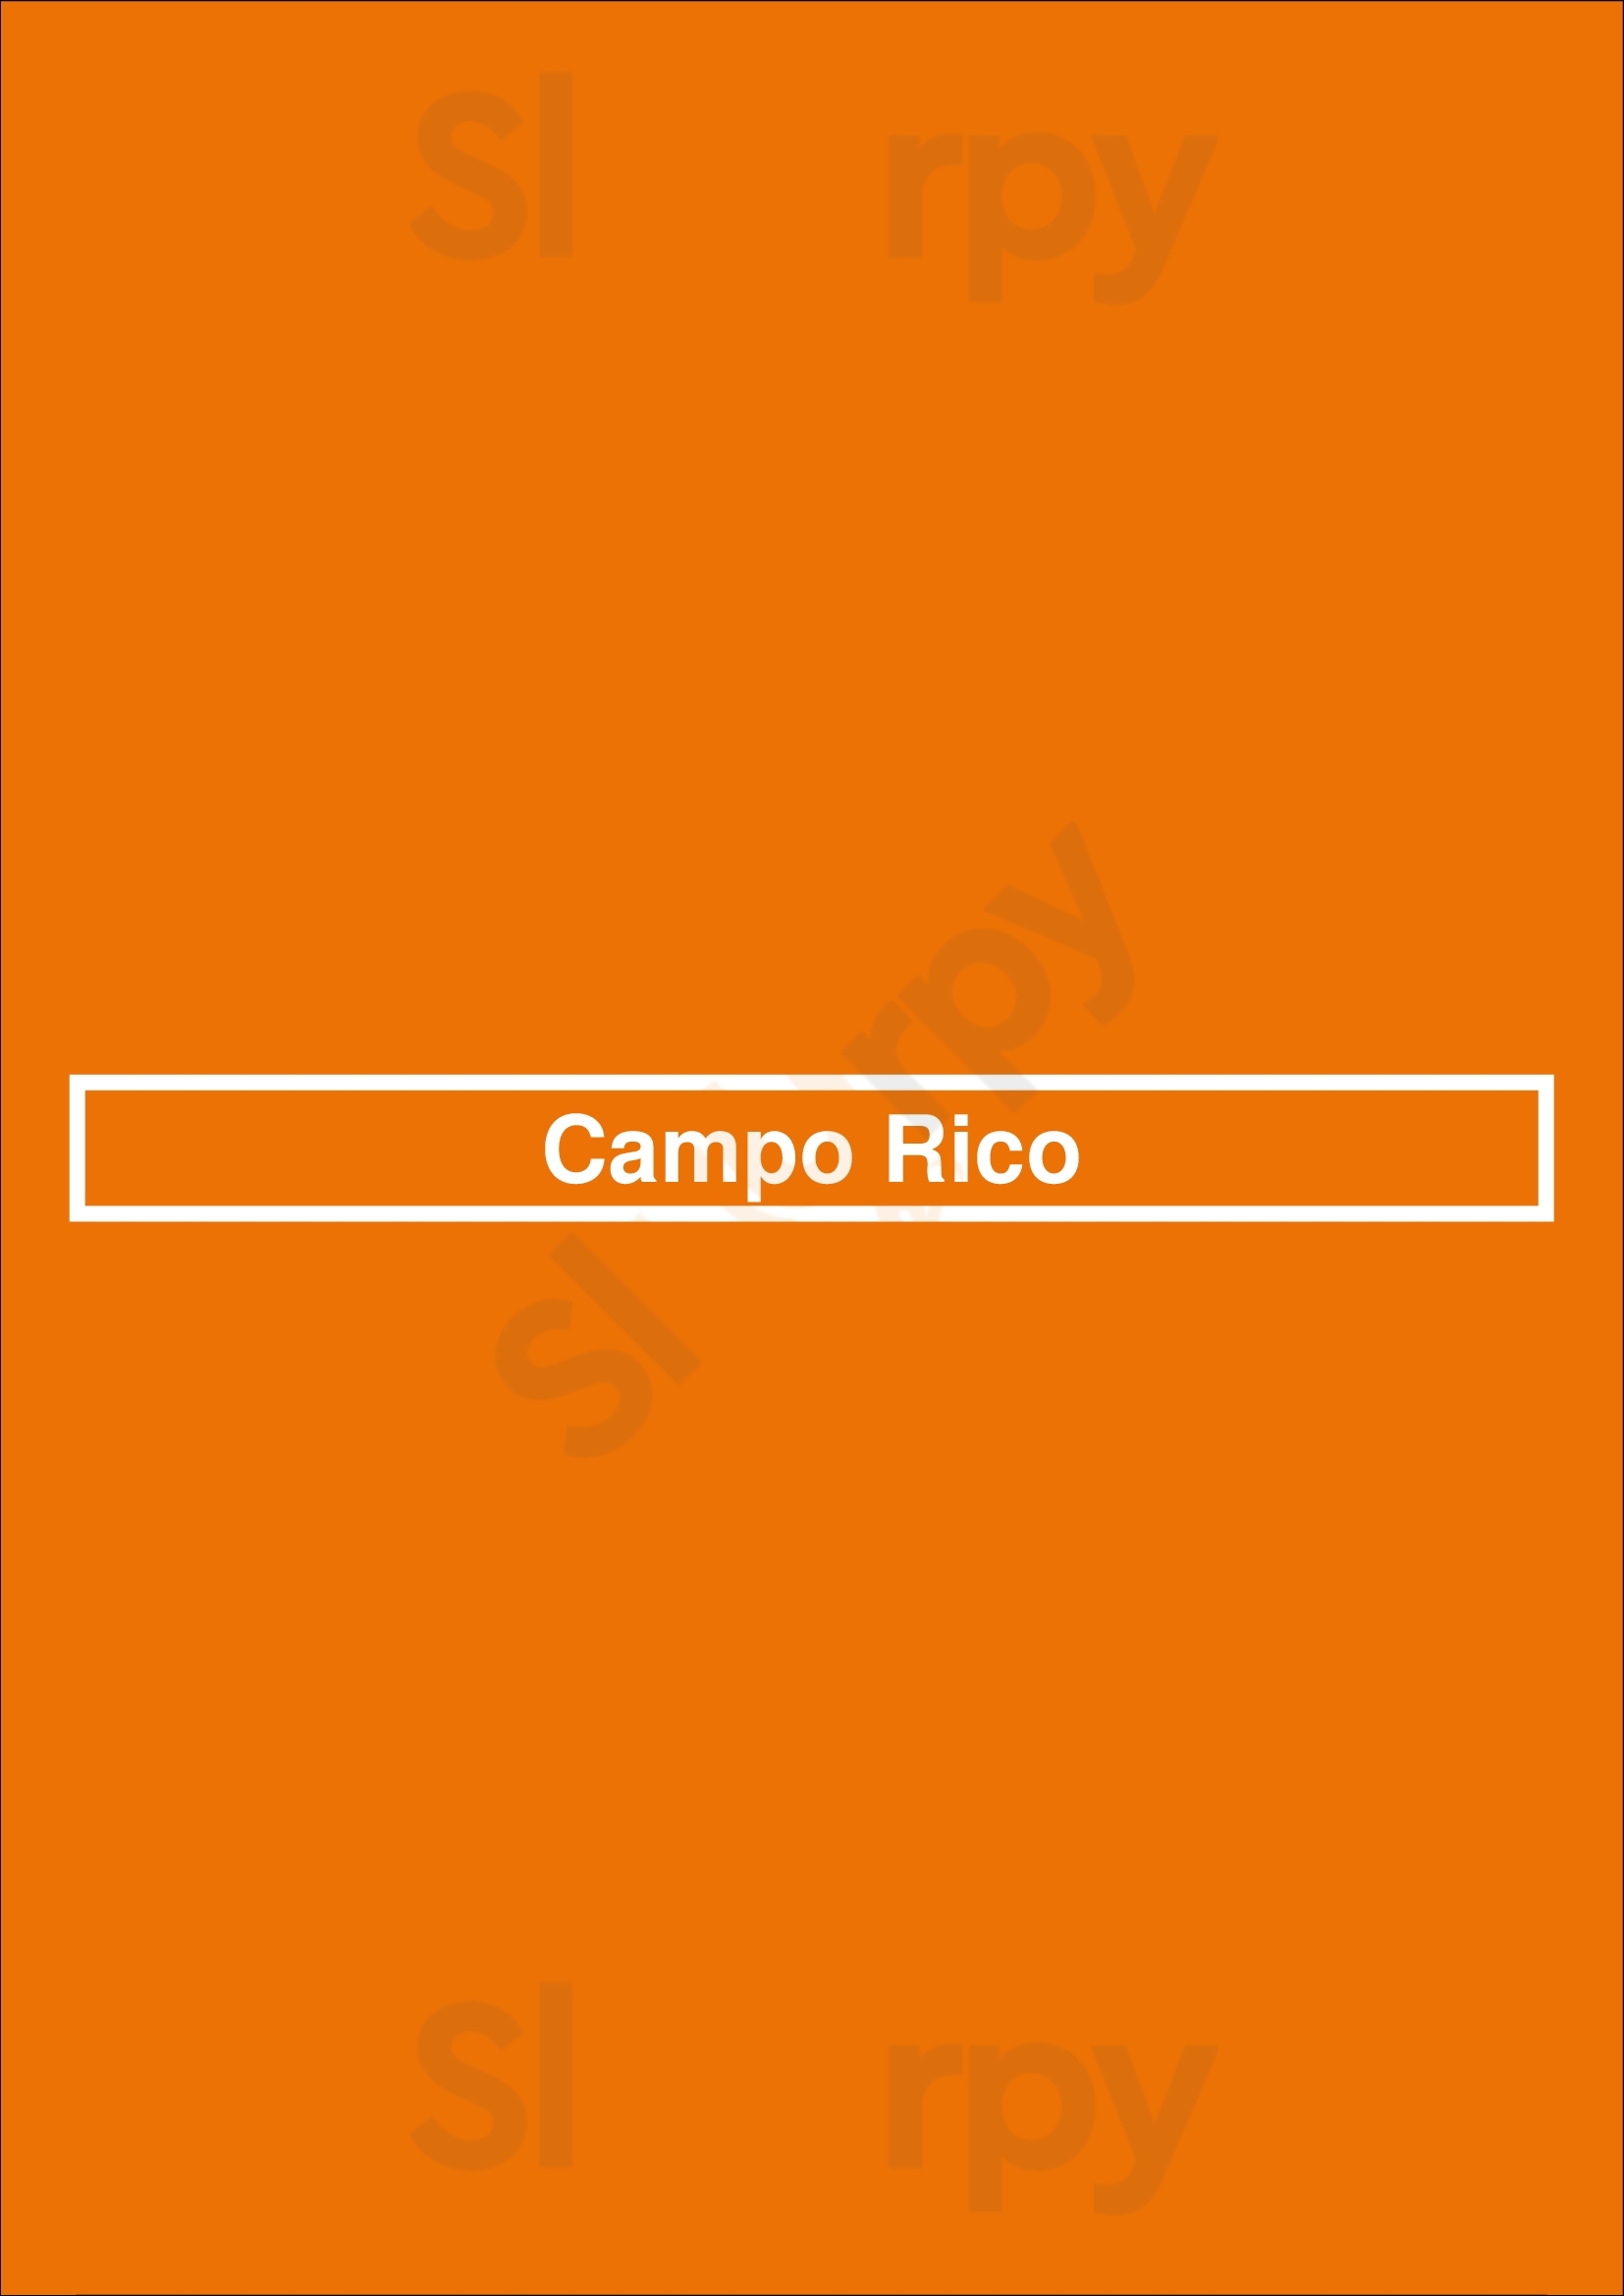 Campo Rico Buenos Aires Menu - 1